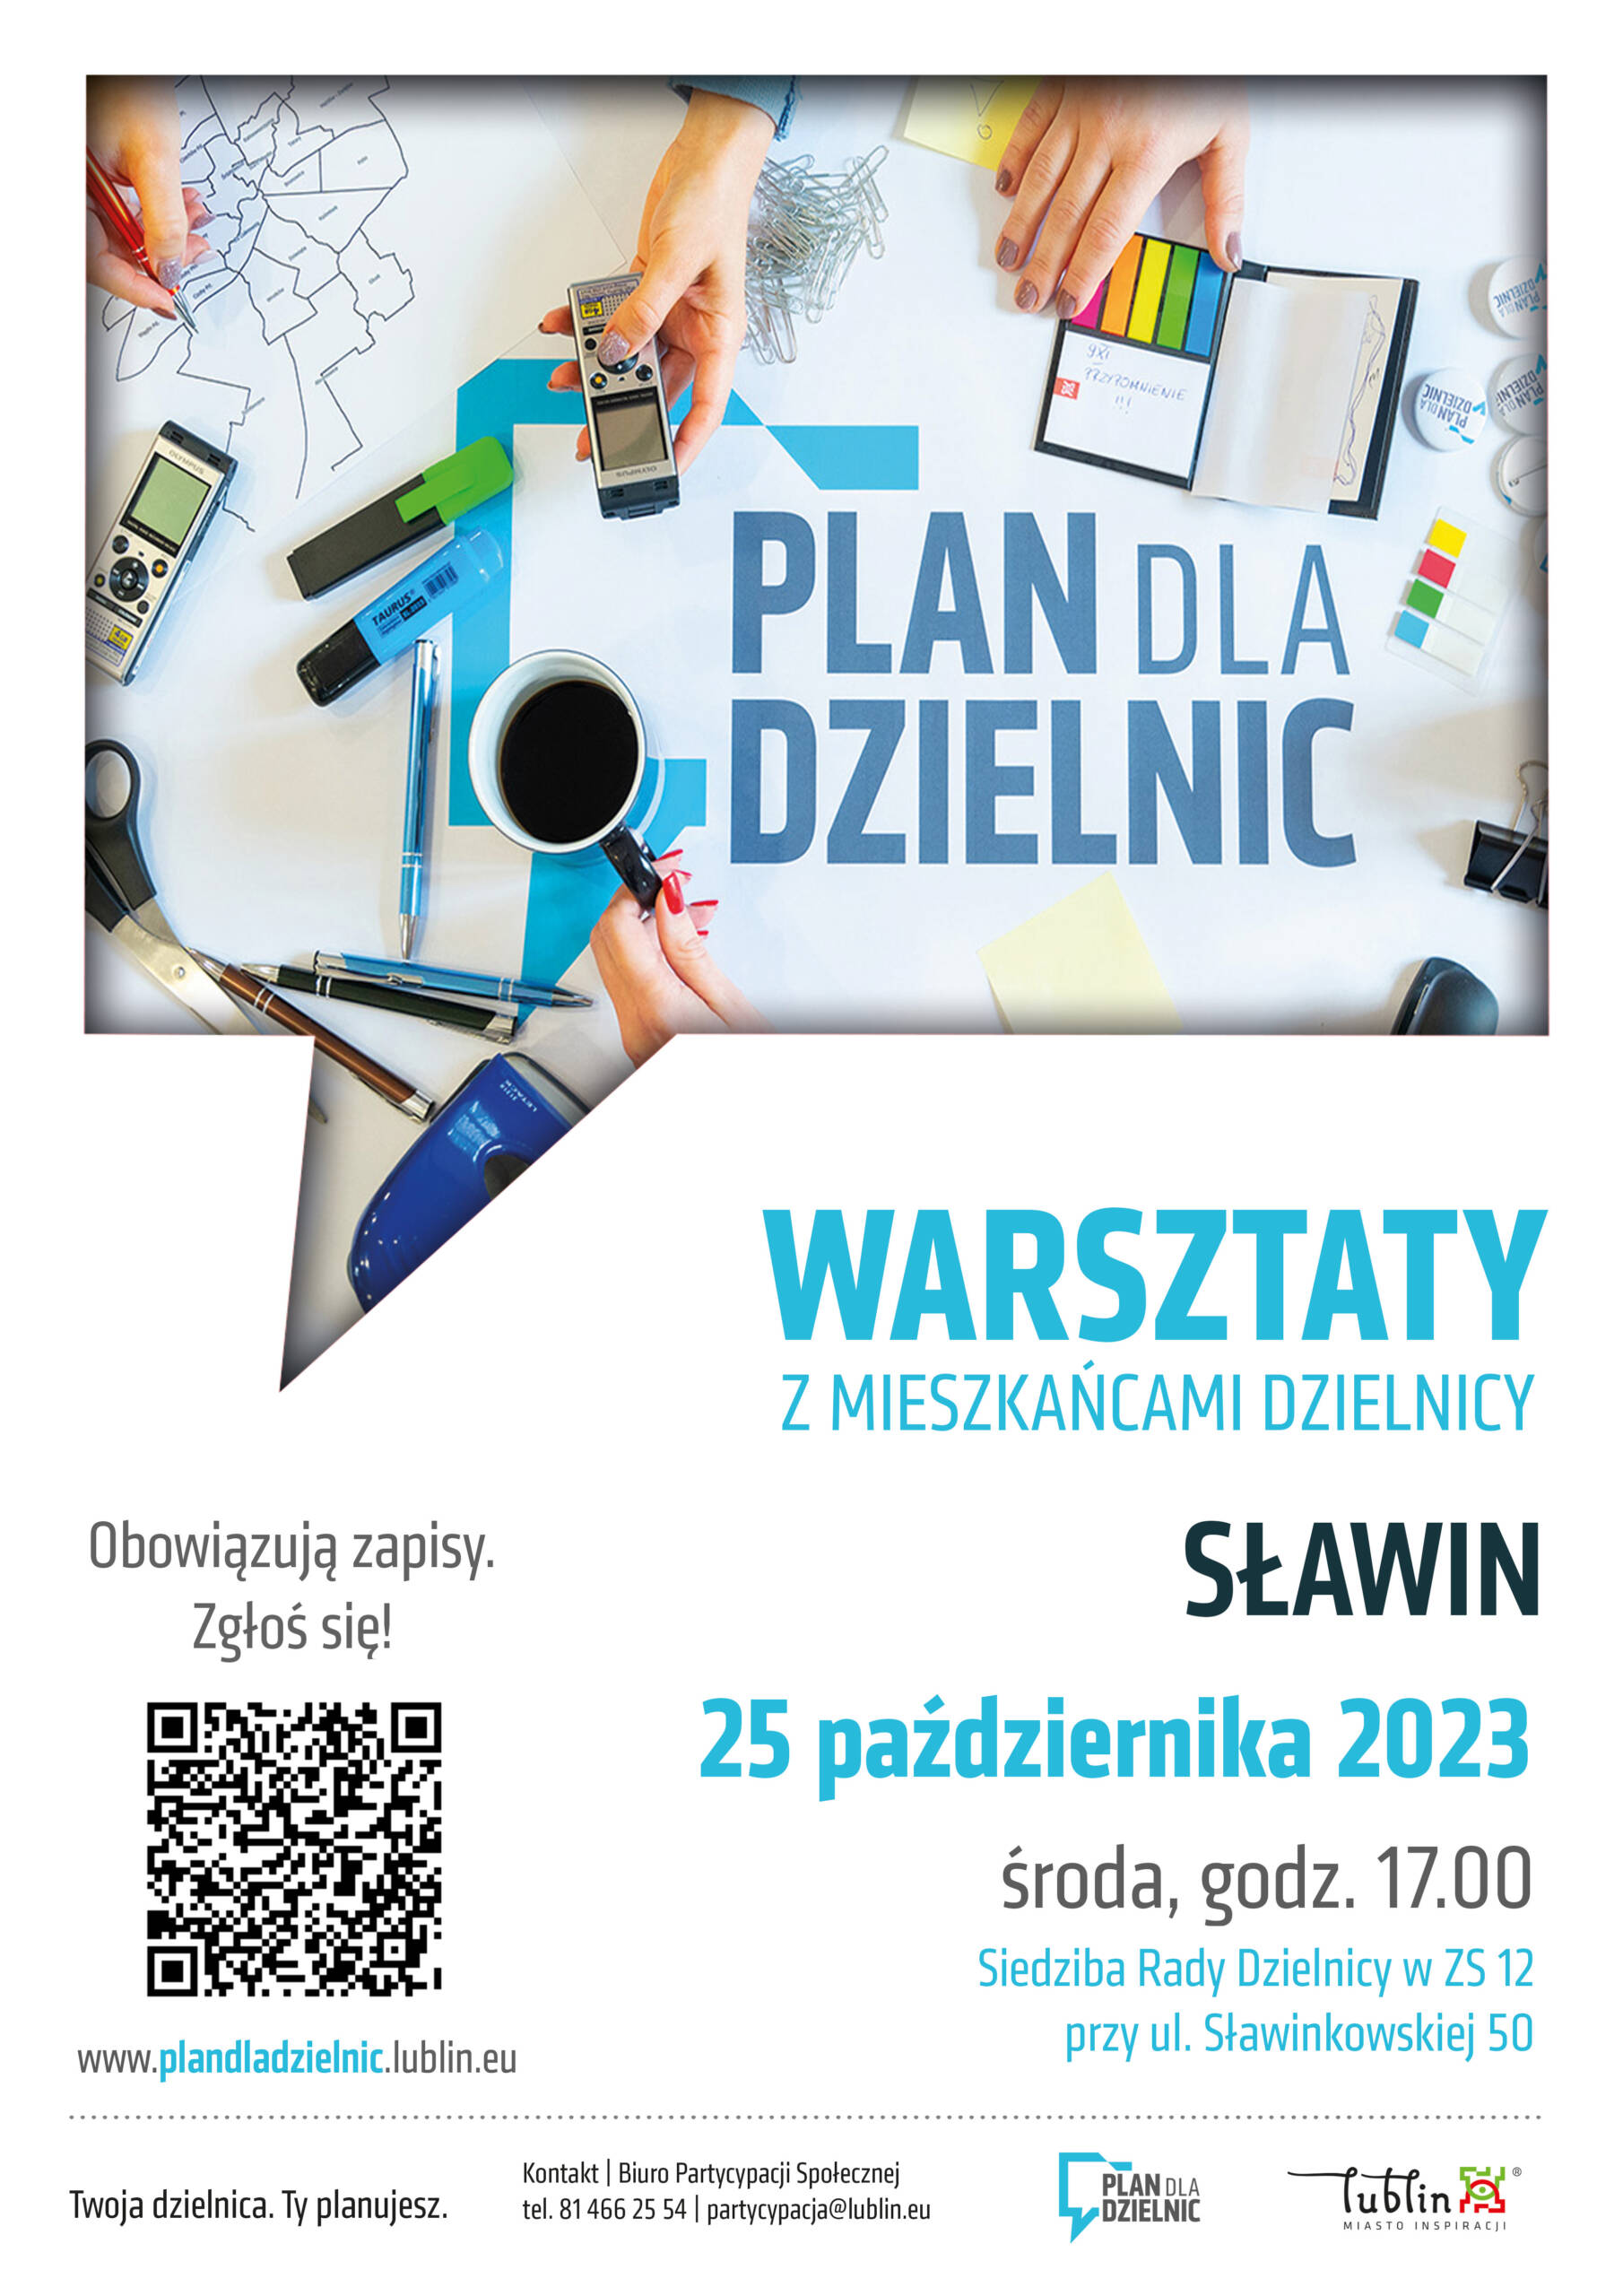 WARSZTATY_Plan dla Dzielnic_Sławin.jpg